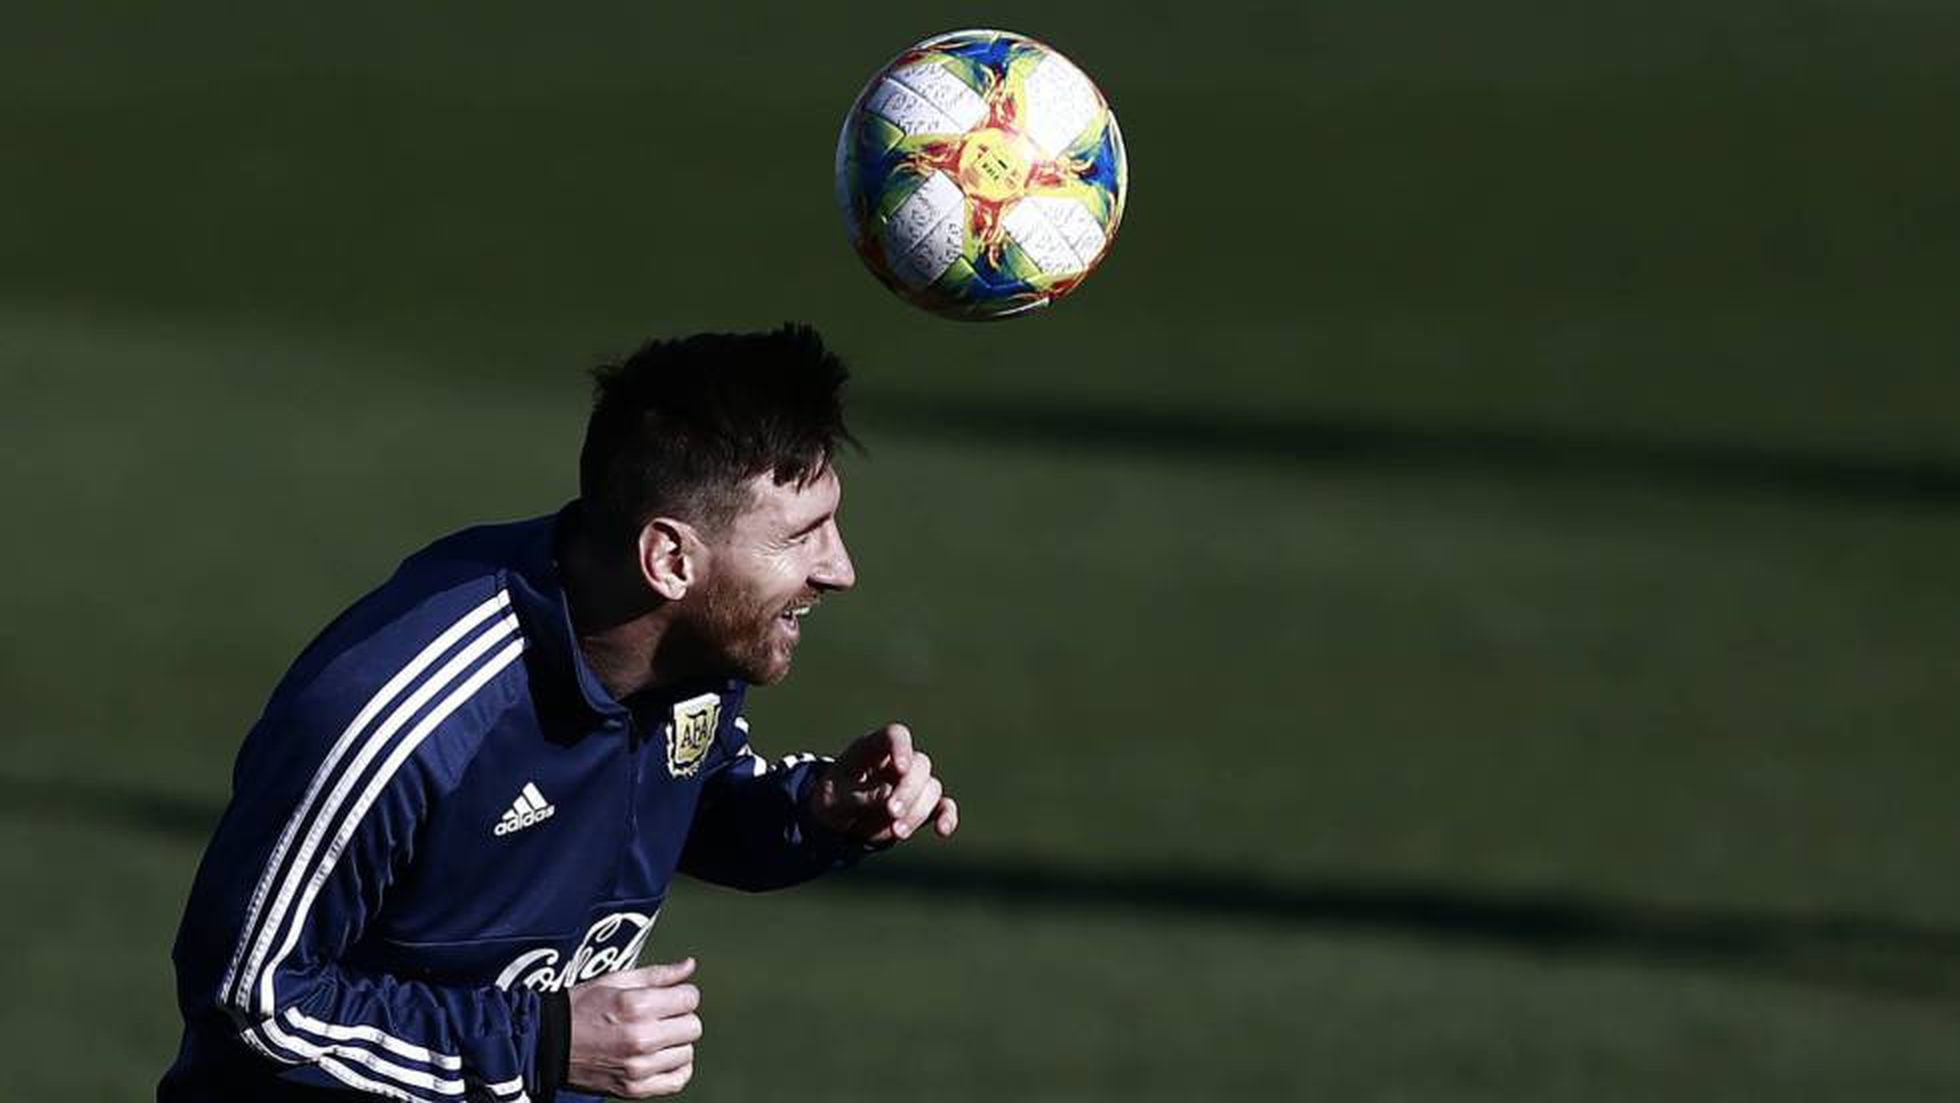 Libro Guinness de récord mundial contrabando Presunto Argentina: Messi vuelve al territorio de su frustración | Deportes | EL PAÍS